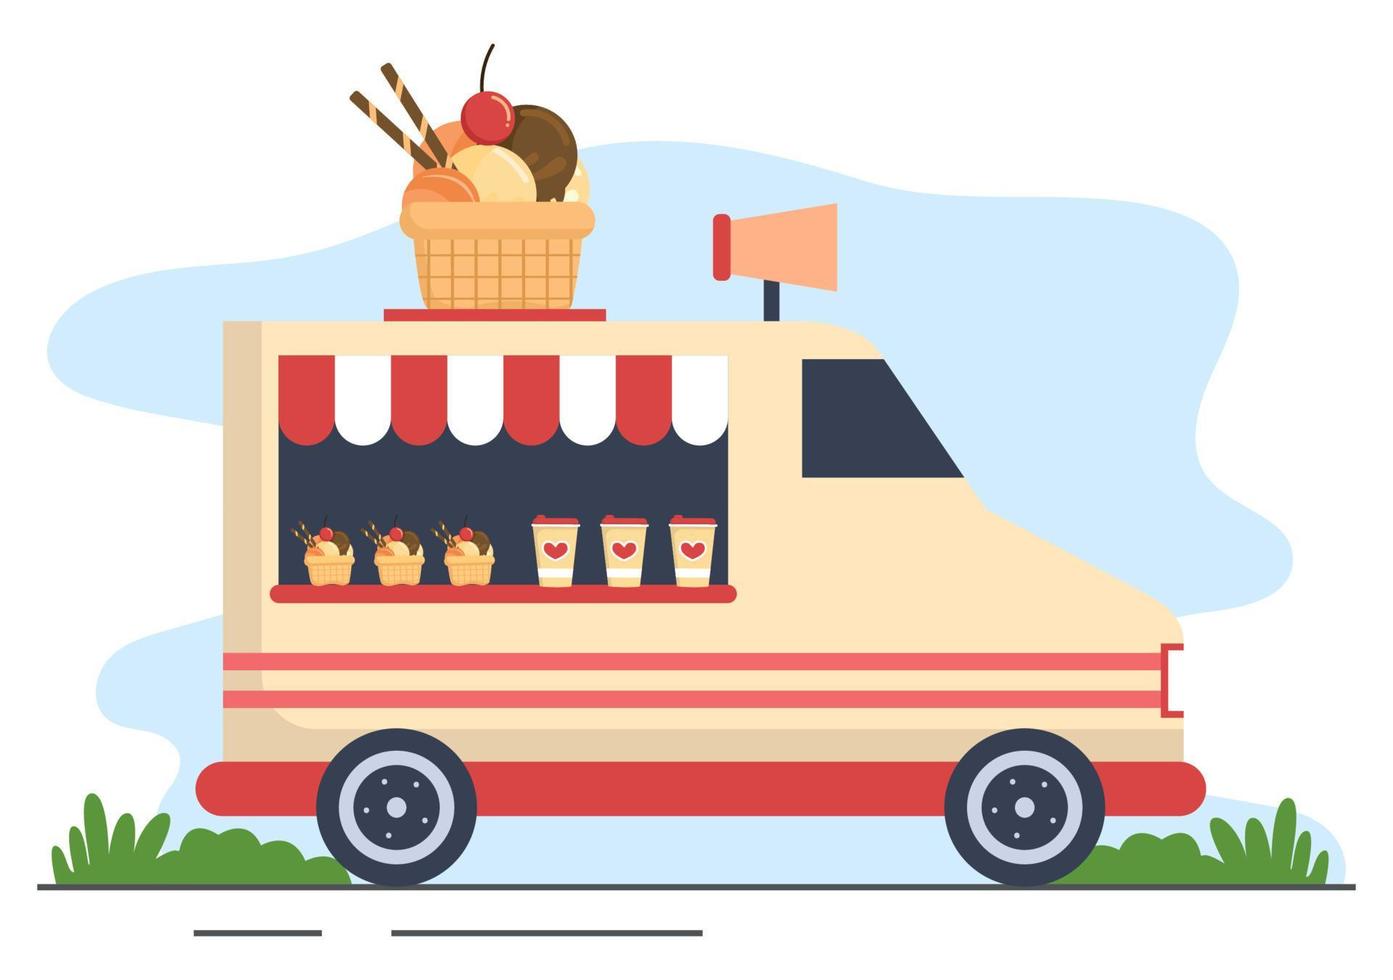 rua ao ar livre e caminhão de comida servindo fast food, como pizza, hambúrguer, cachorro-quente ou tacos em ilustração de cartaz de fundo de desenho animado plano vetor